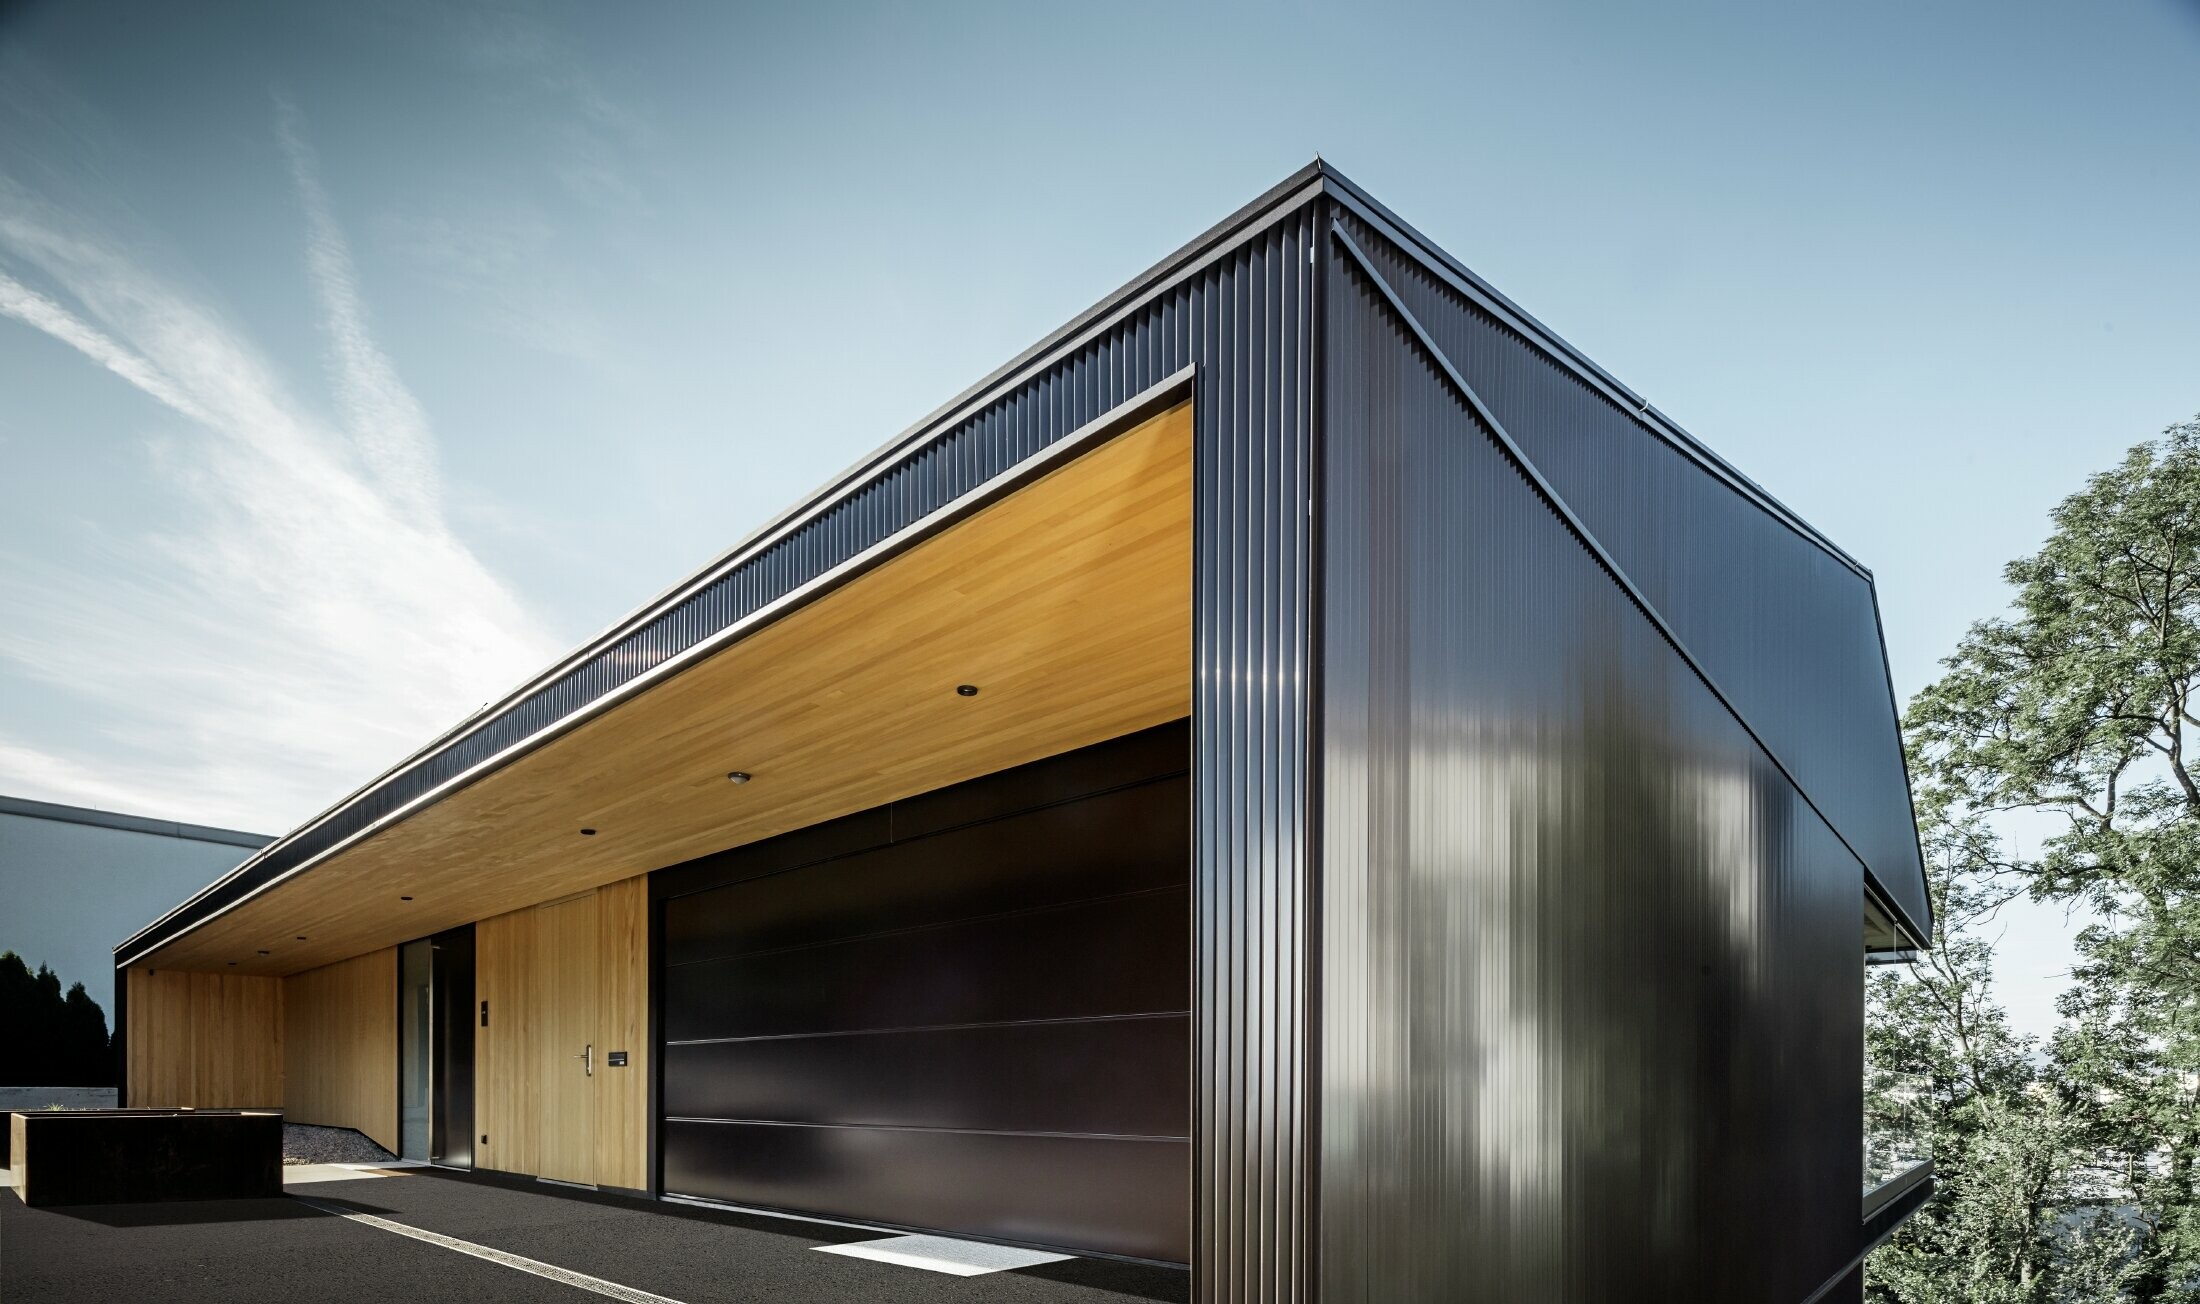 Accesso per garage di una casa unifamiliare, la facciata è rivestita con il profilo a zeta PREFA in marrone scuro. 